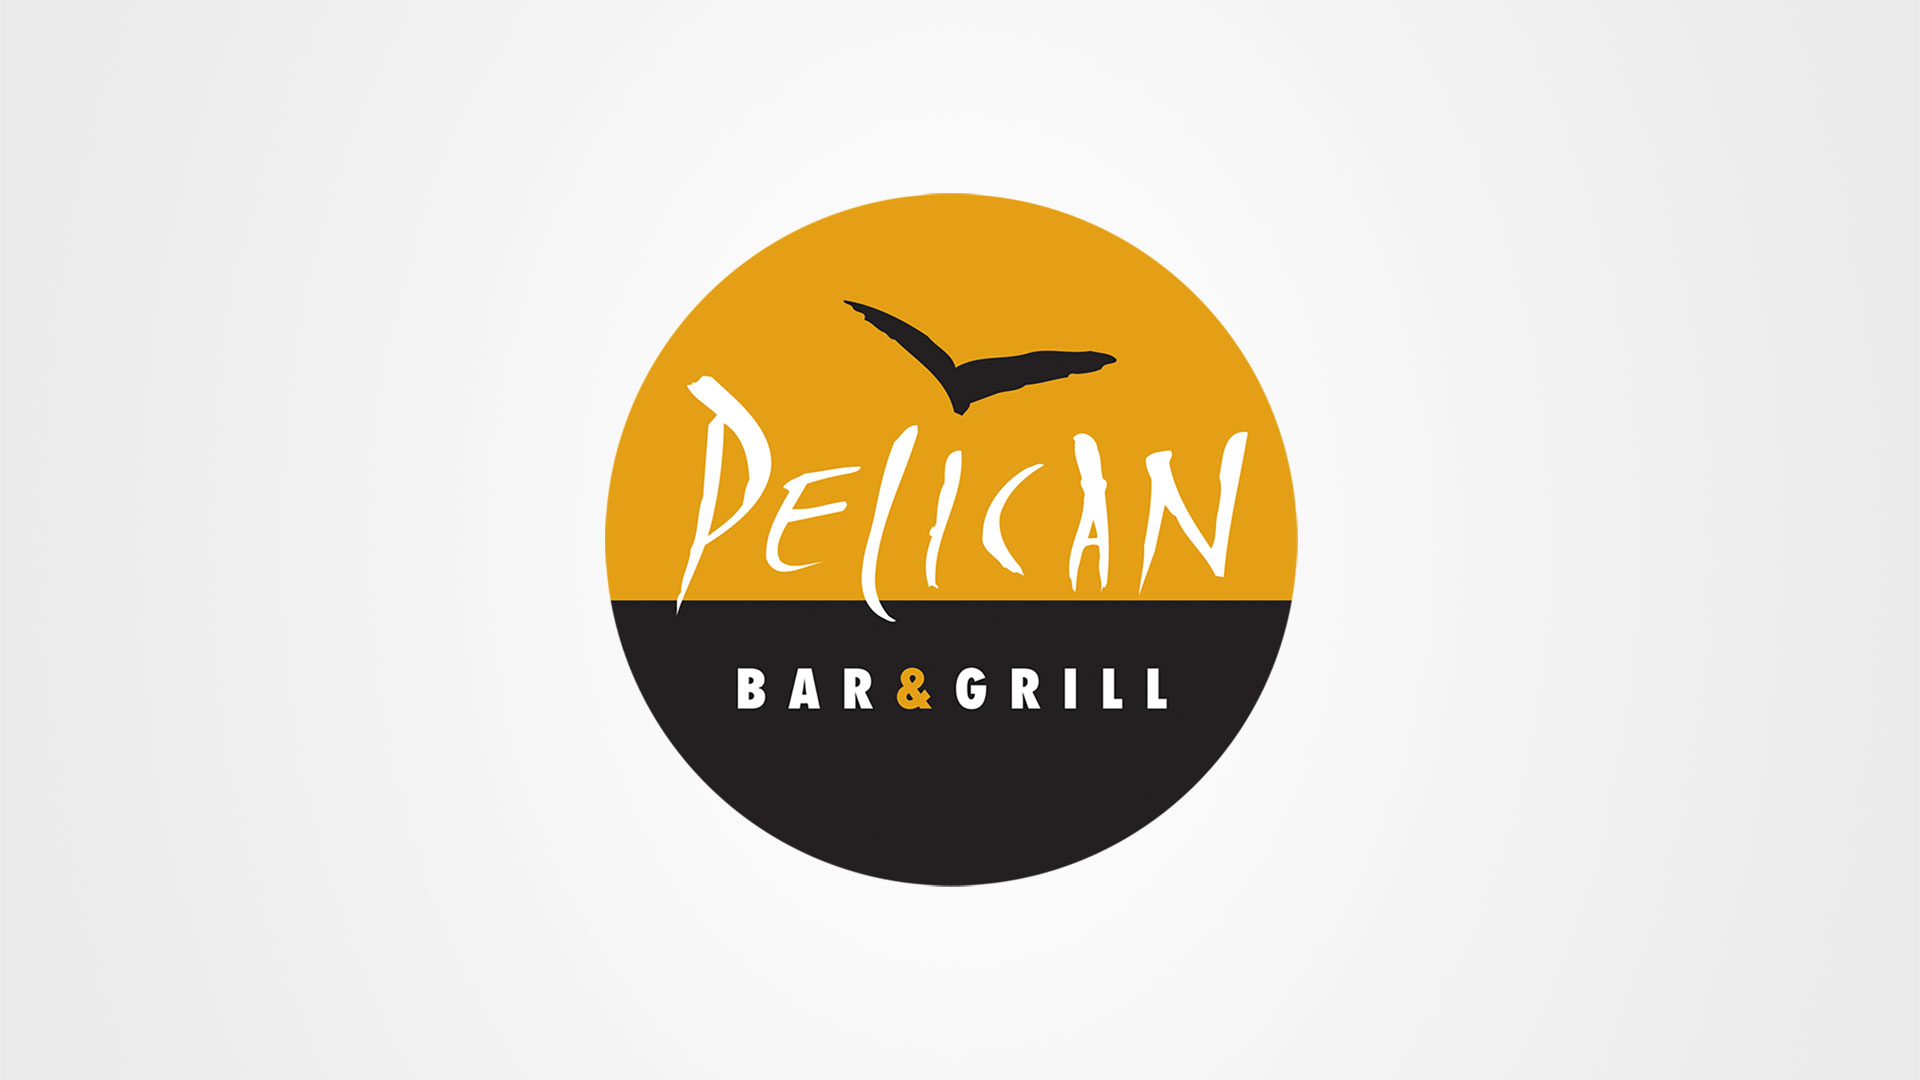 Pelican-Bar-Grill-Logo-1920x1080